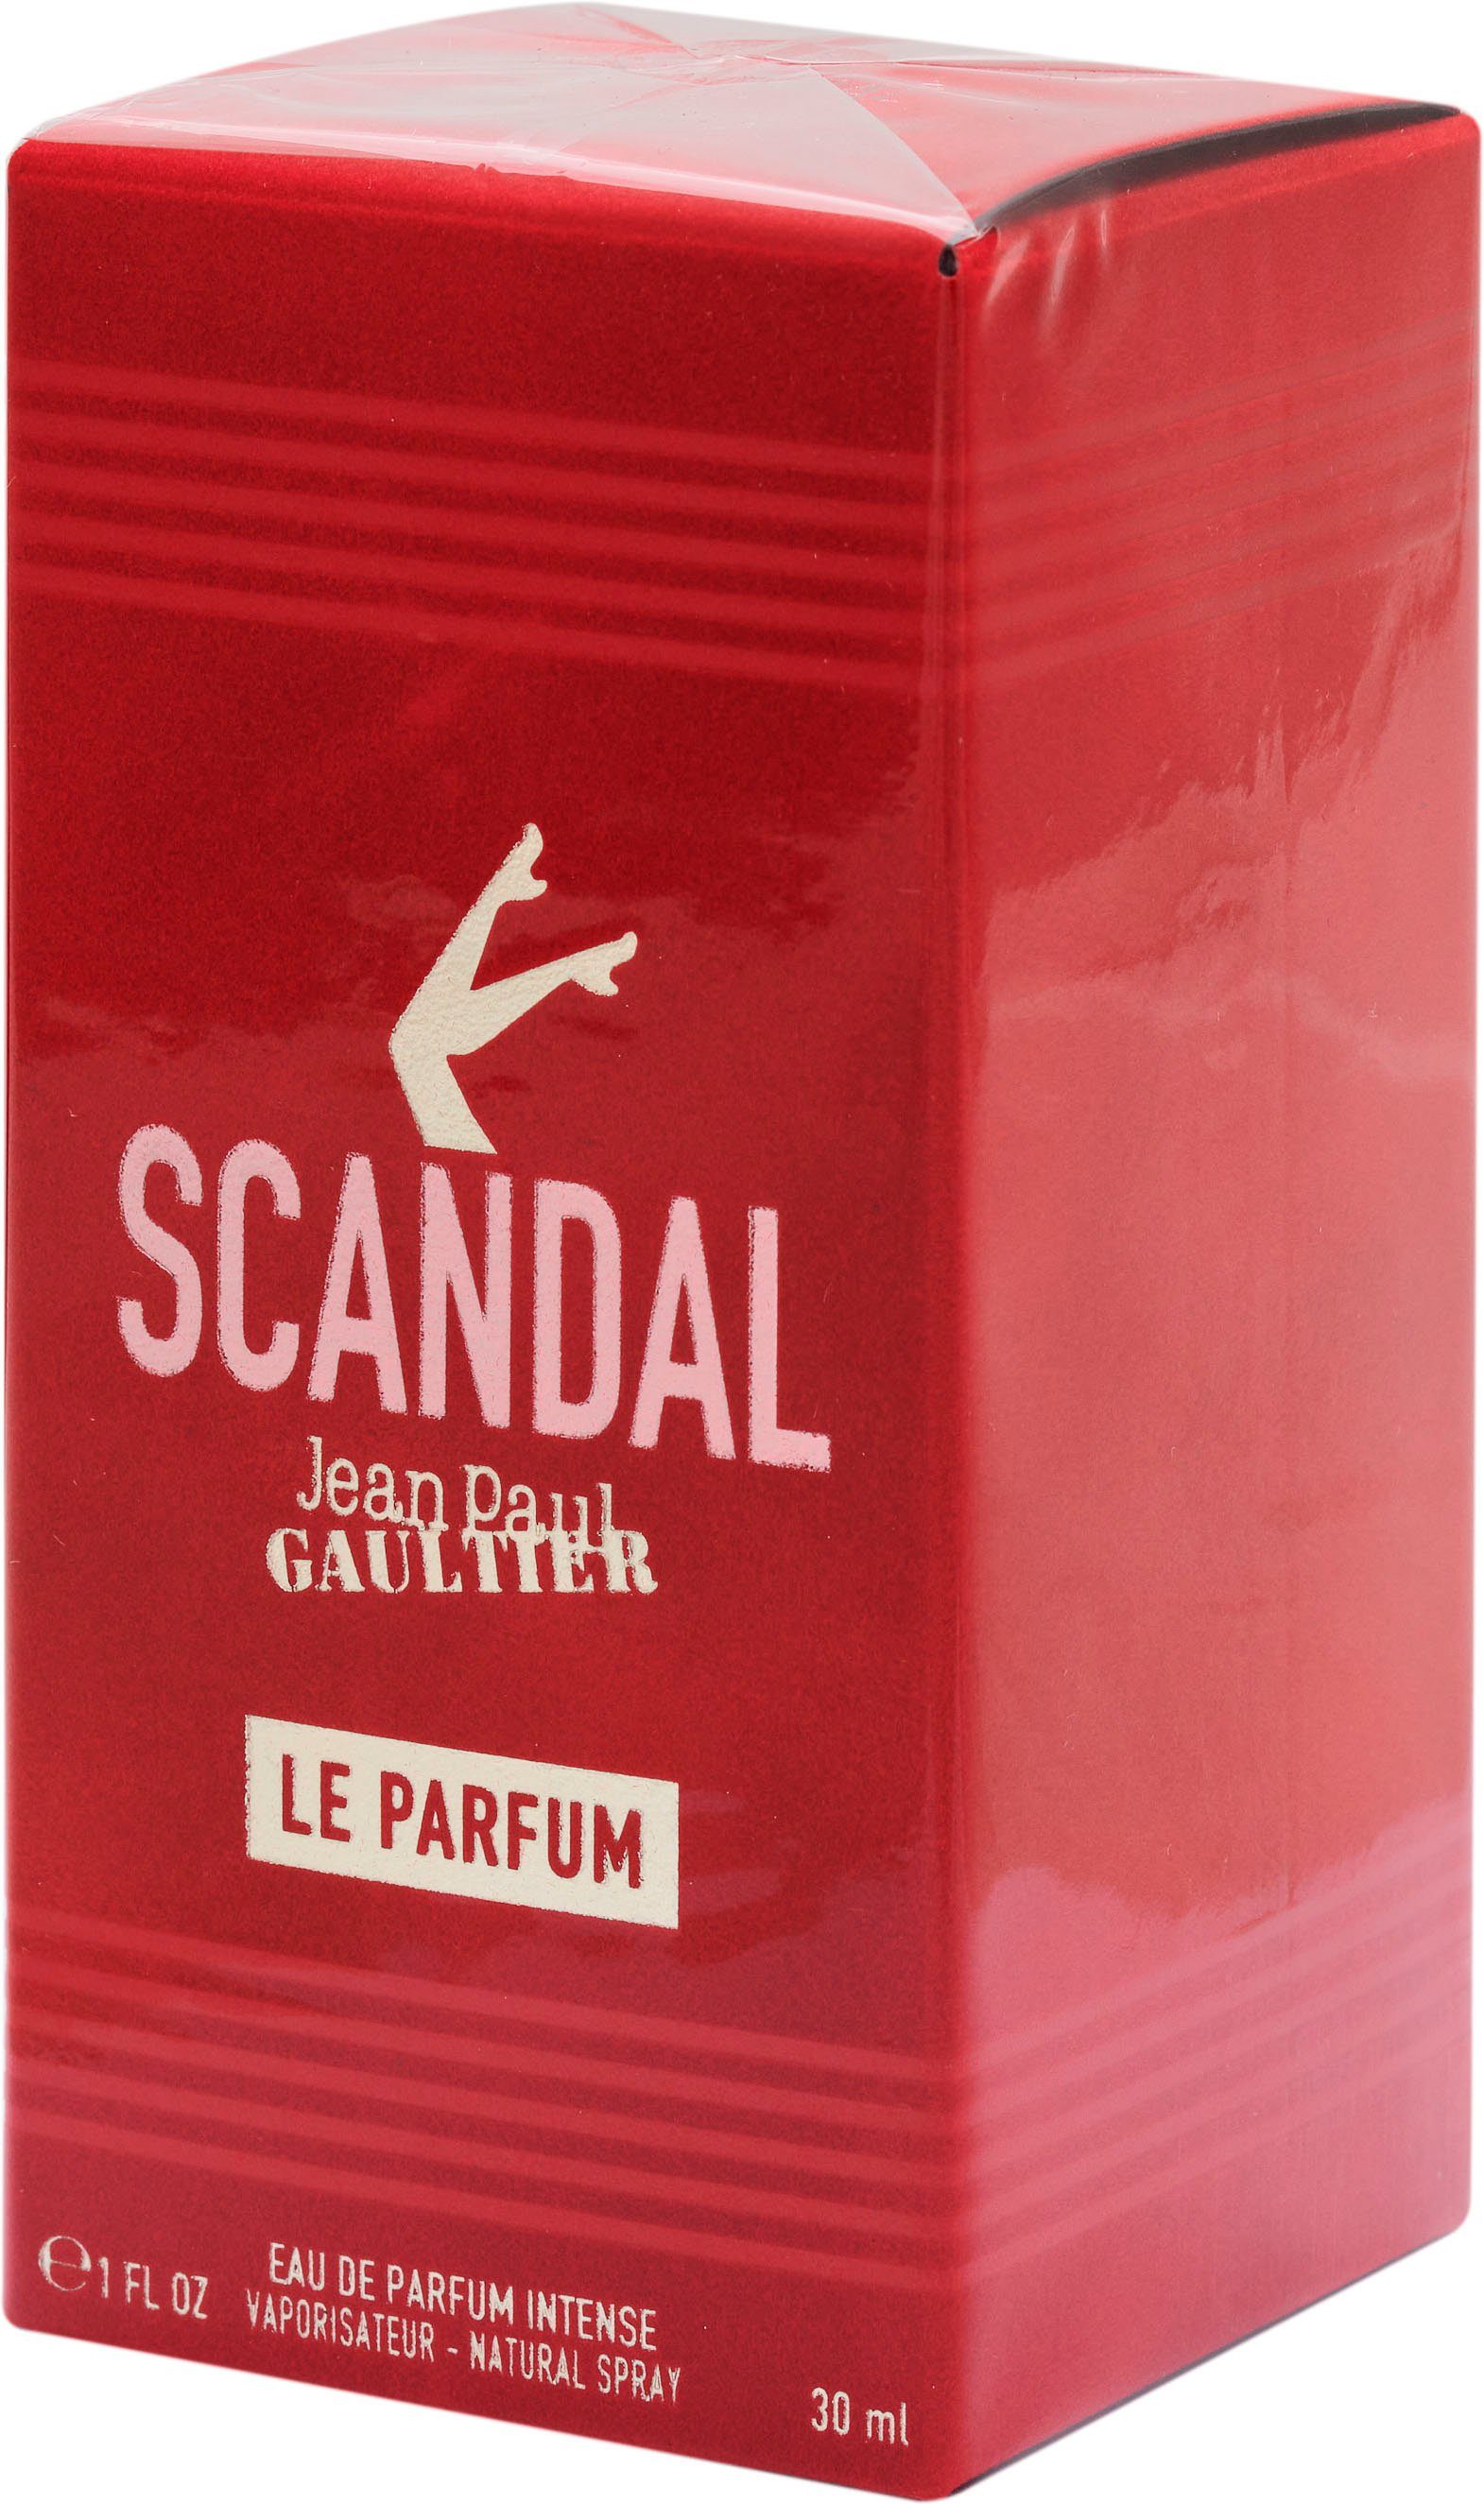 GAULTIER Scandal de PAUL Parfum Le Parfum JEAN Eau